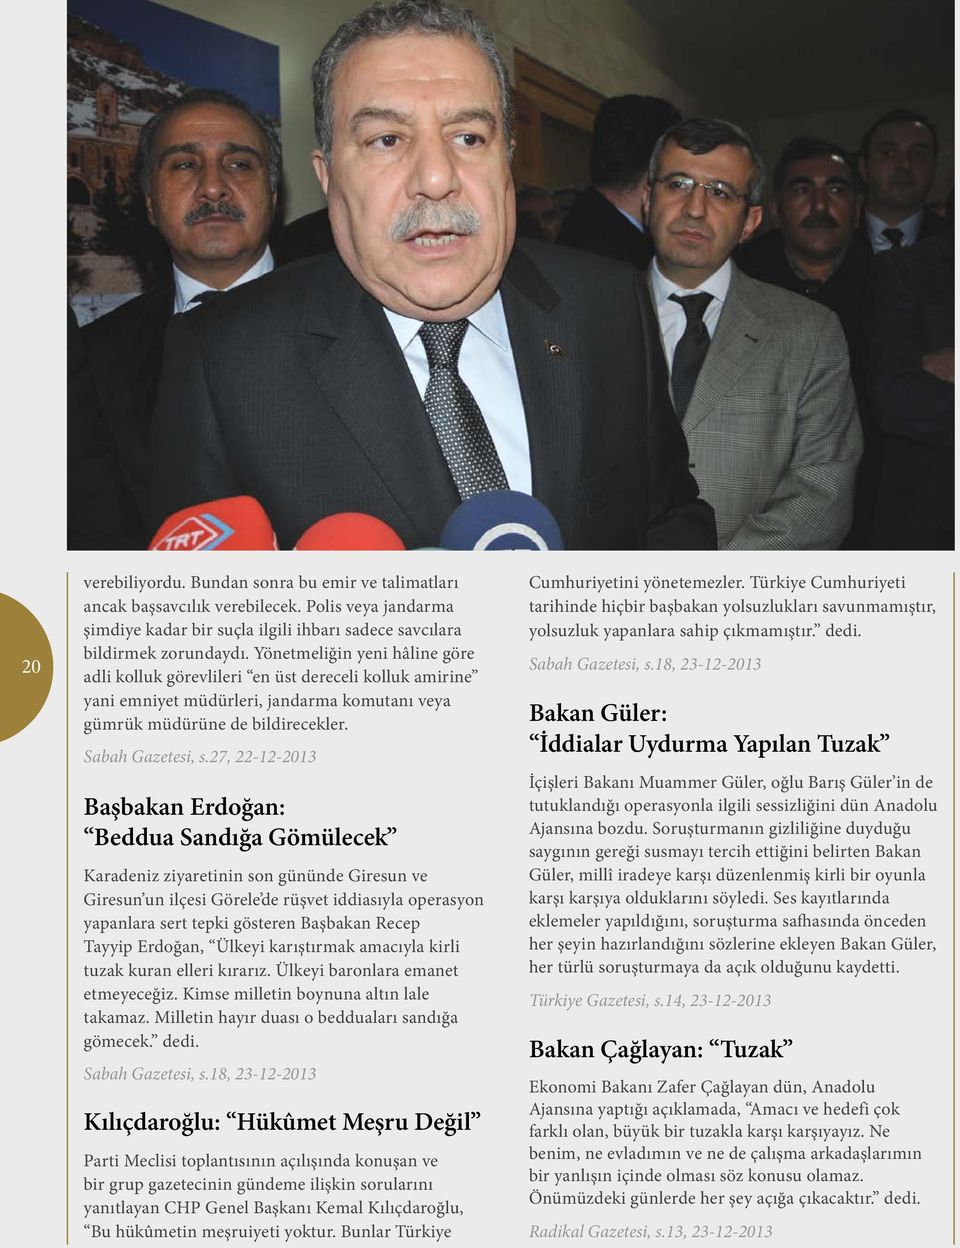 27, 22-12-2013 Başbakan Erdoğan: Beddua Sandığa Gömülecek Karadeniz ziyaretinin son gününde Giresun ve Giresun un ilçesi Görele de rüşvet iddiasıyla operasyon yapanlara sert tepki gösteren Başbakan